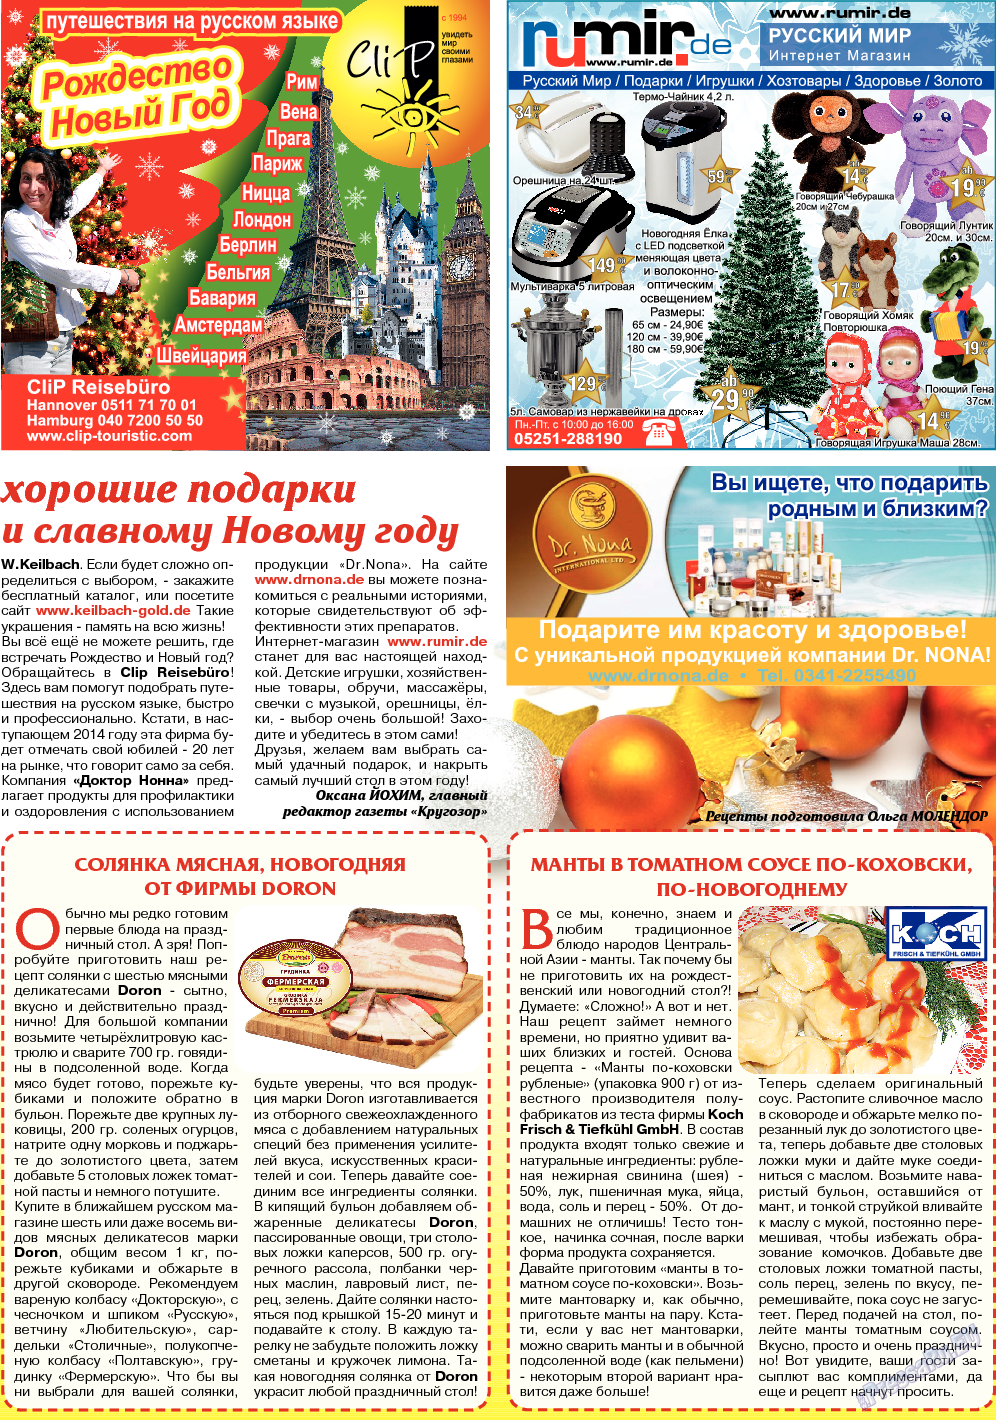 Кругозор, газета. 2013 №12 стр.17